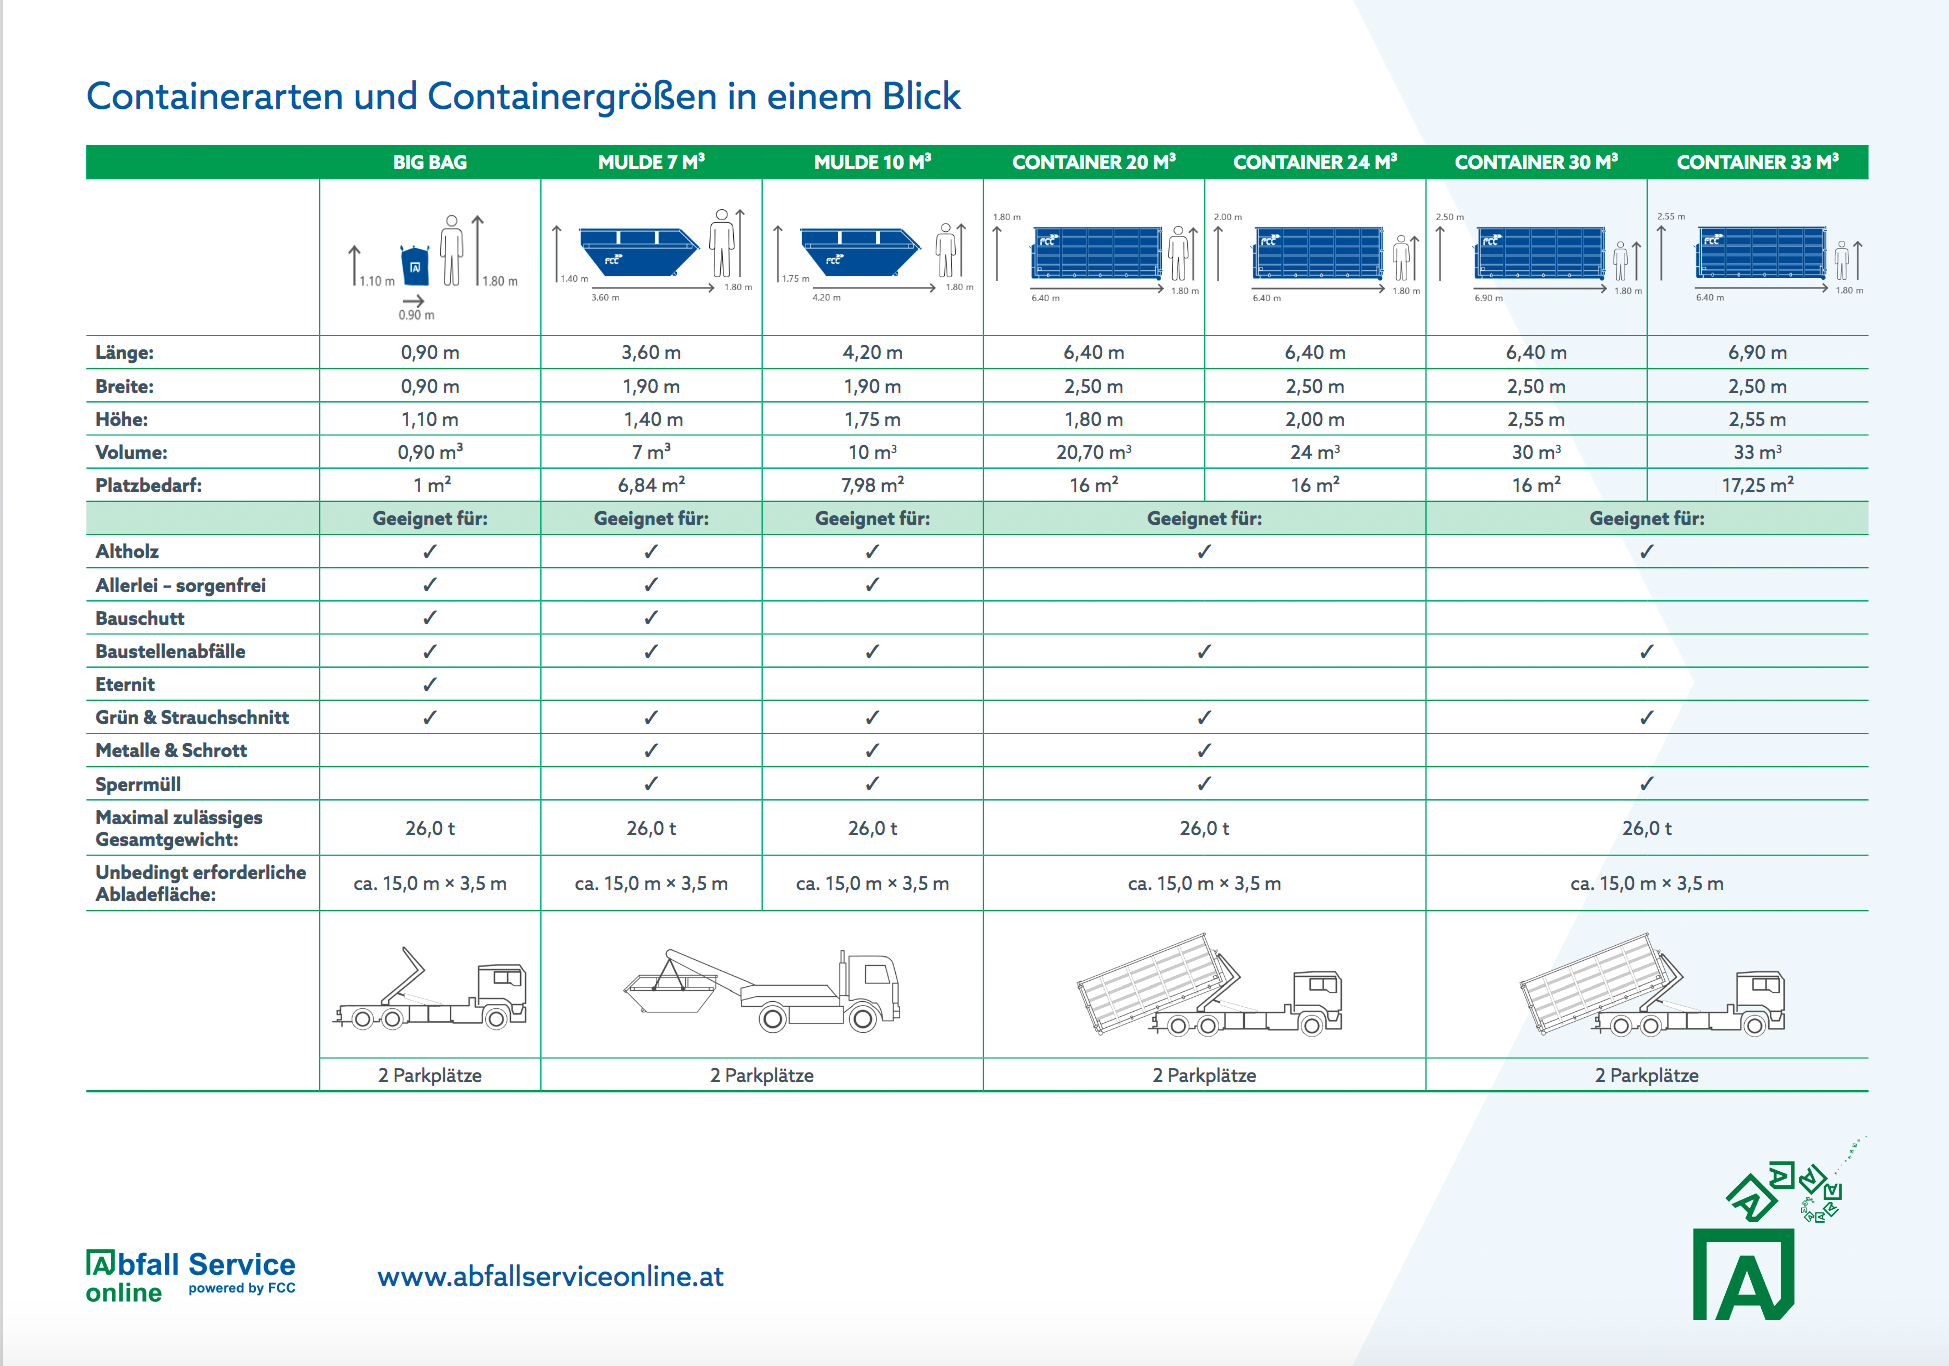 uebersicht-containerarten-containergrössen-abfall-service-online